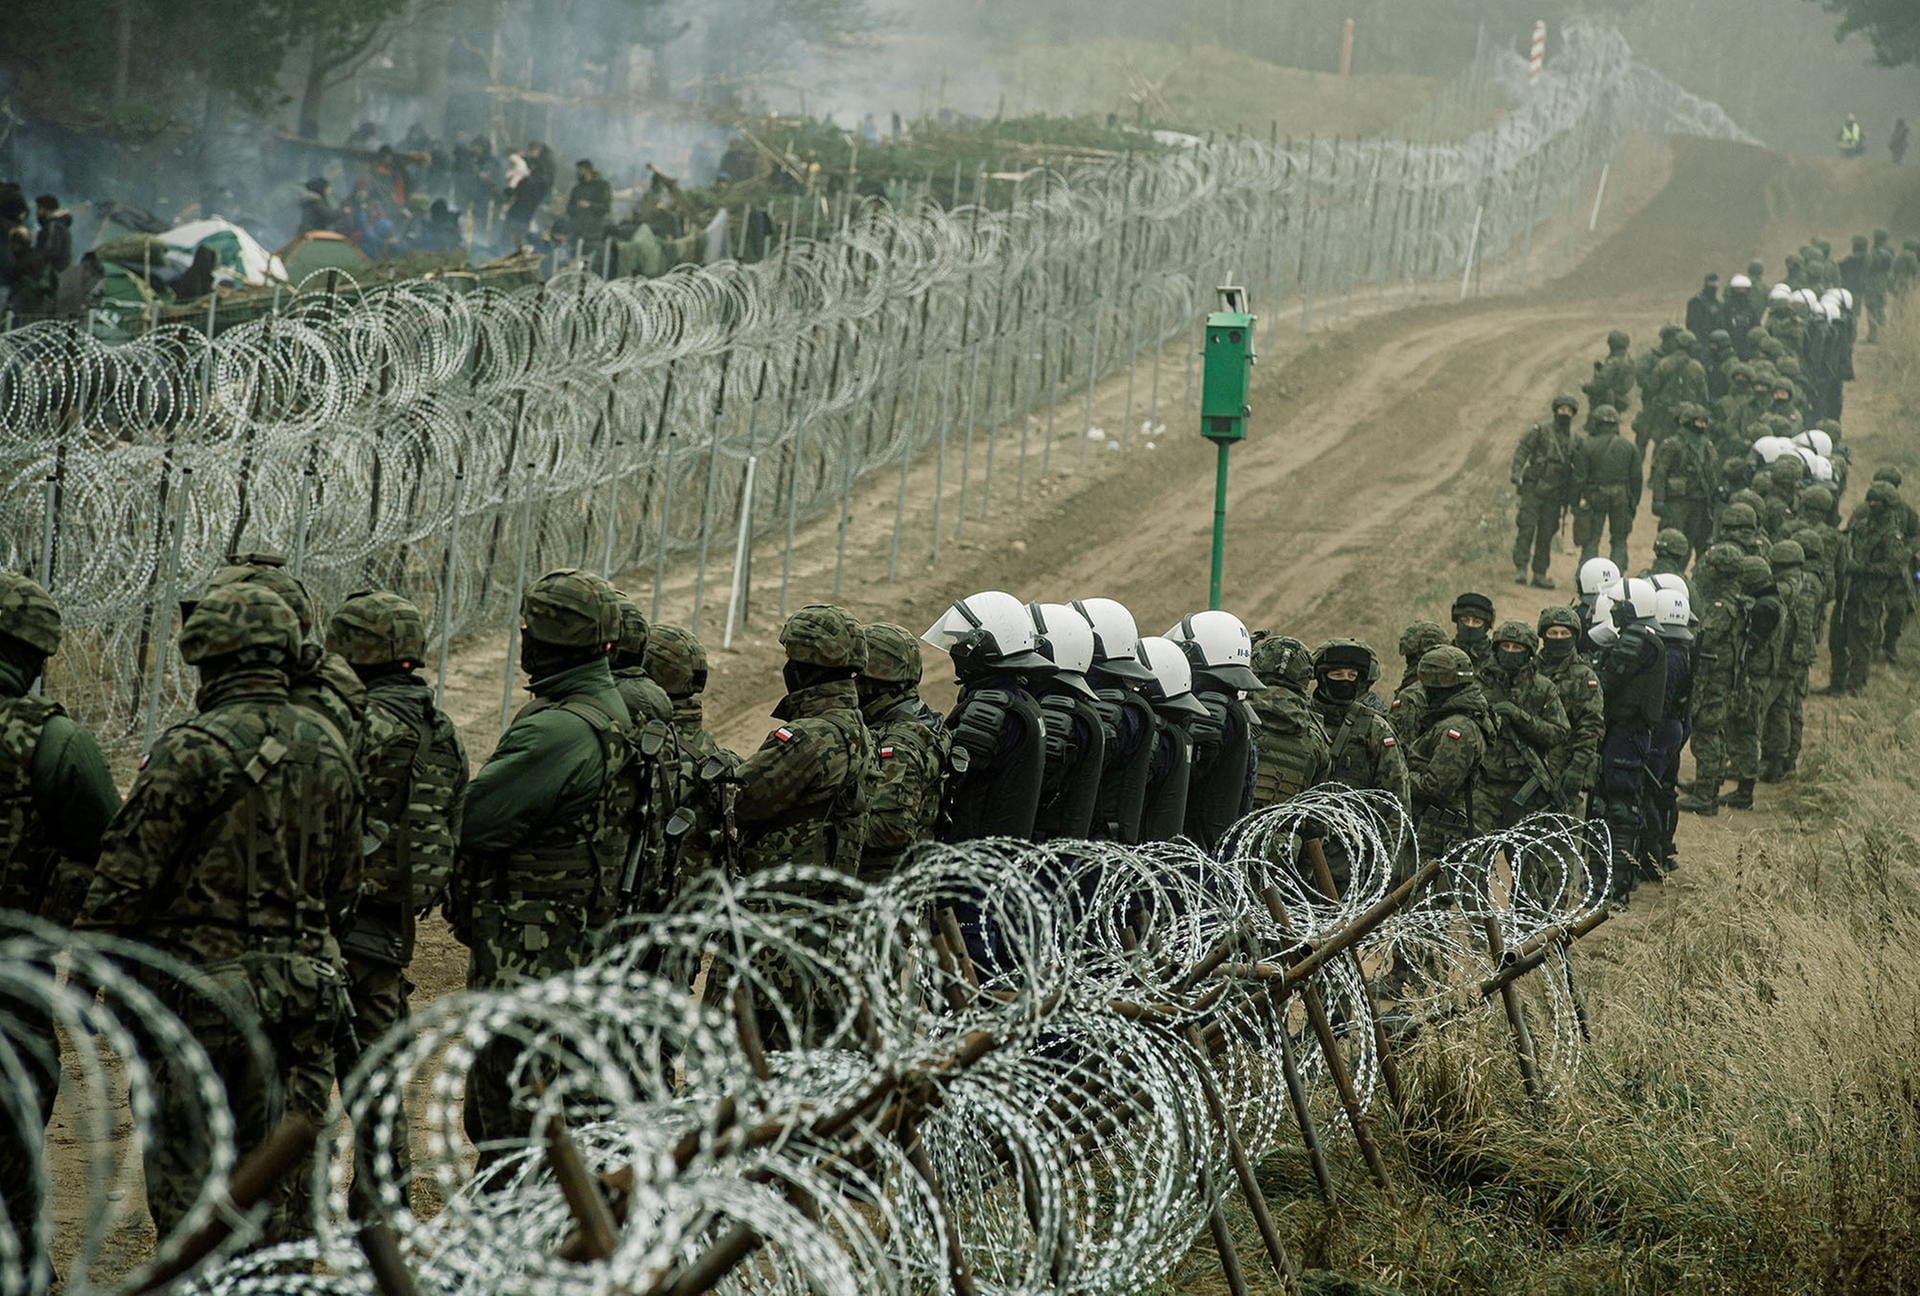 Grenze im polnischen Kuznica: Soldaten bewachen dort das Gebiet, lassen keine Migranten aus Belarus durch.